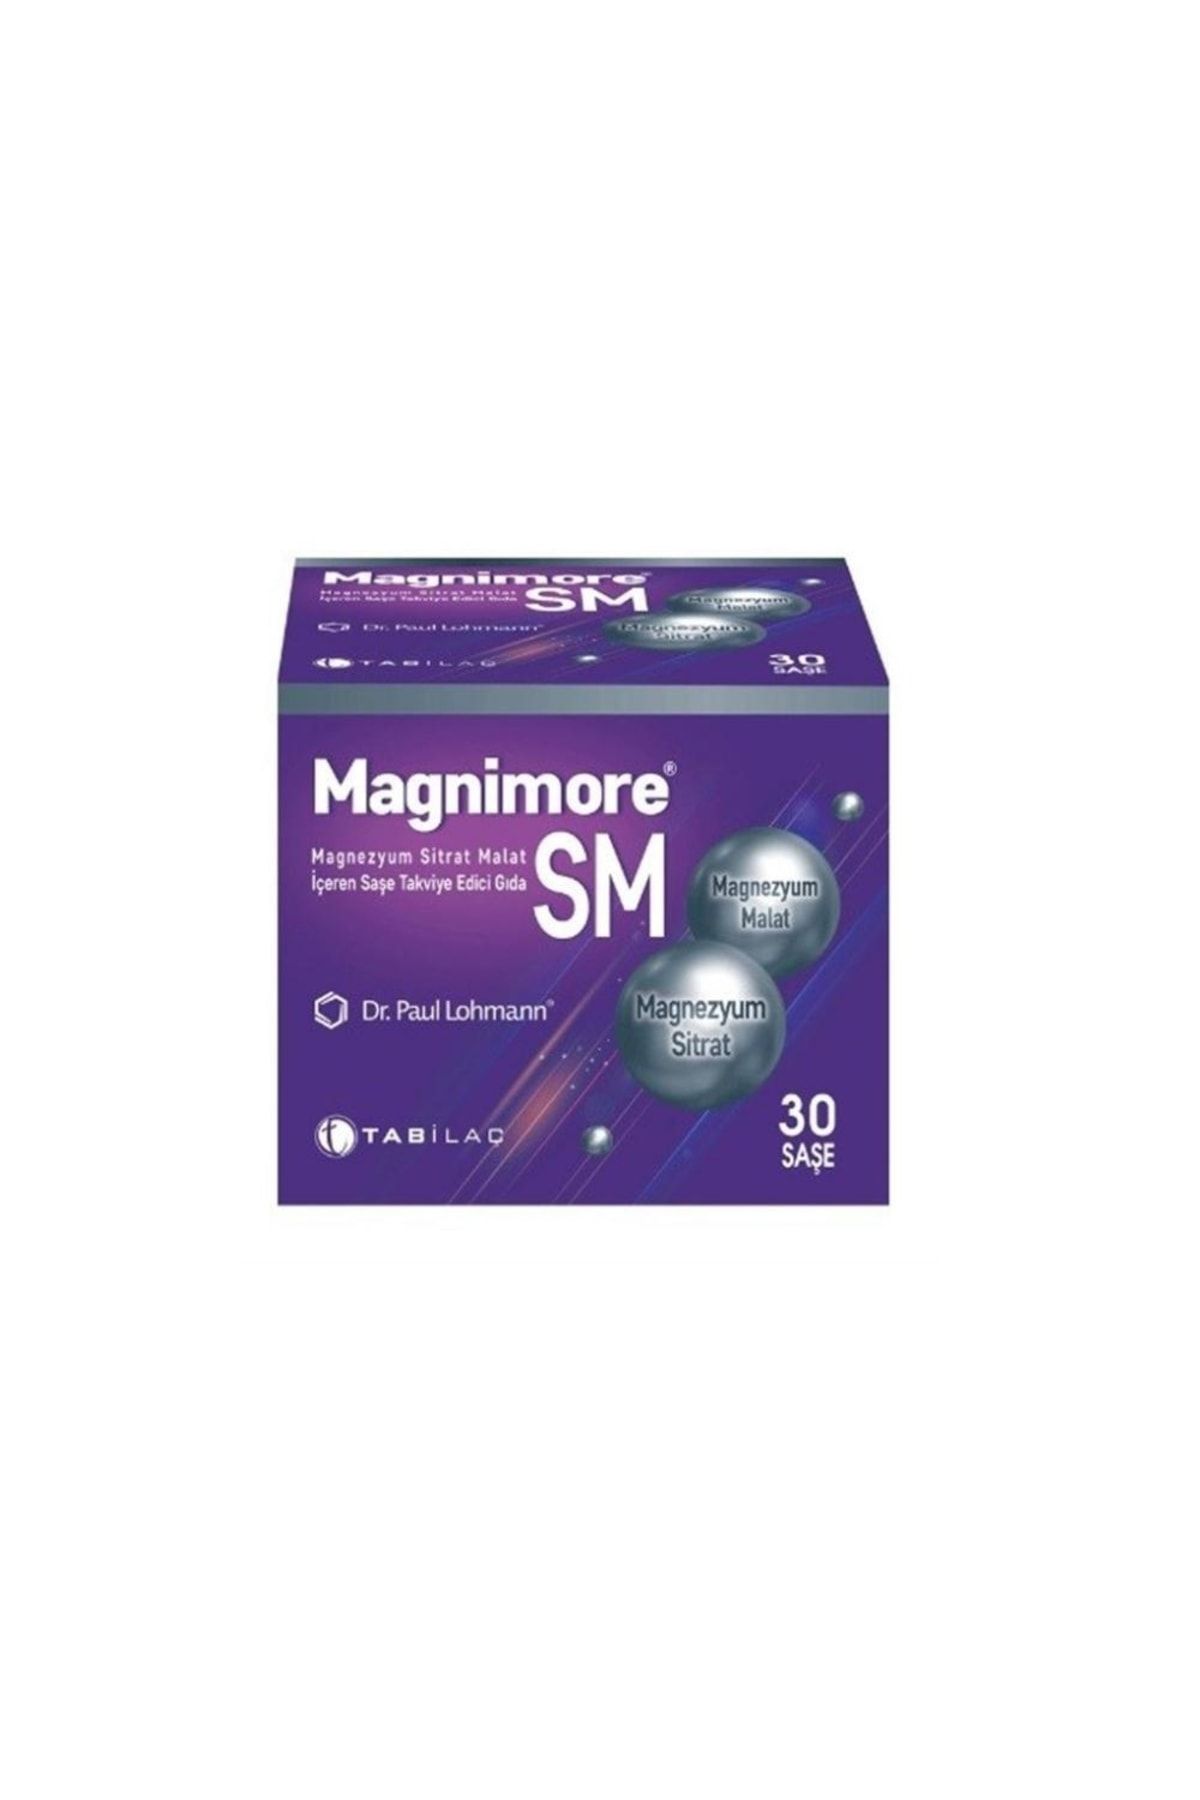 Magnimore Sm Magnezyum Sitrat Malat Içeren Saşe Takviye Edici Gıda 30 Saşe